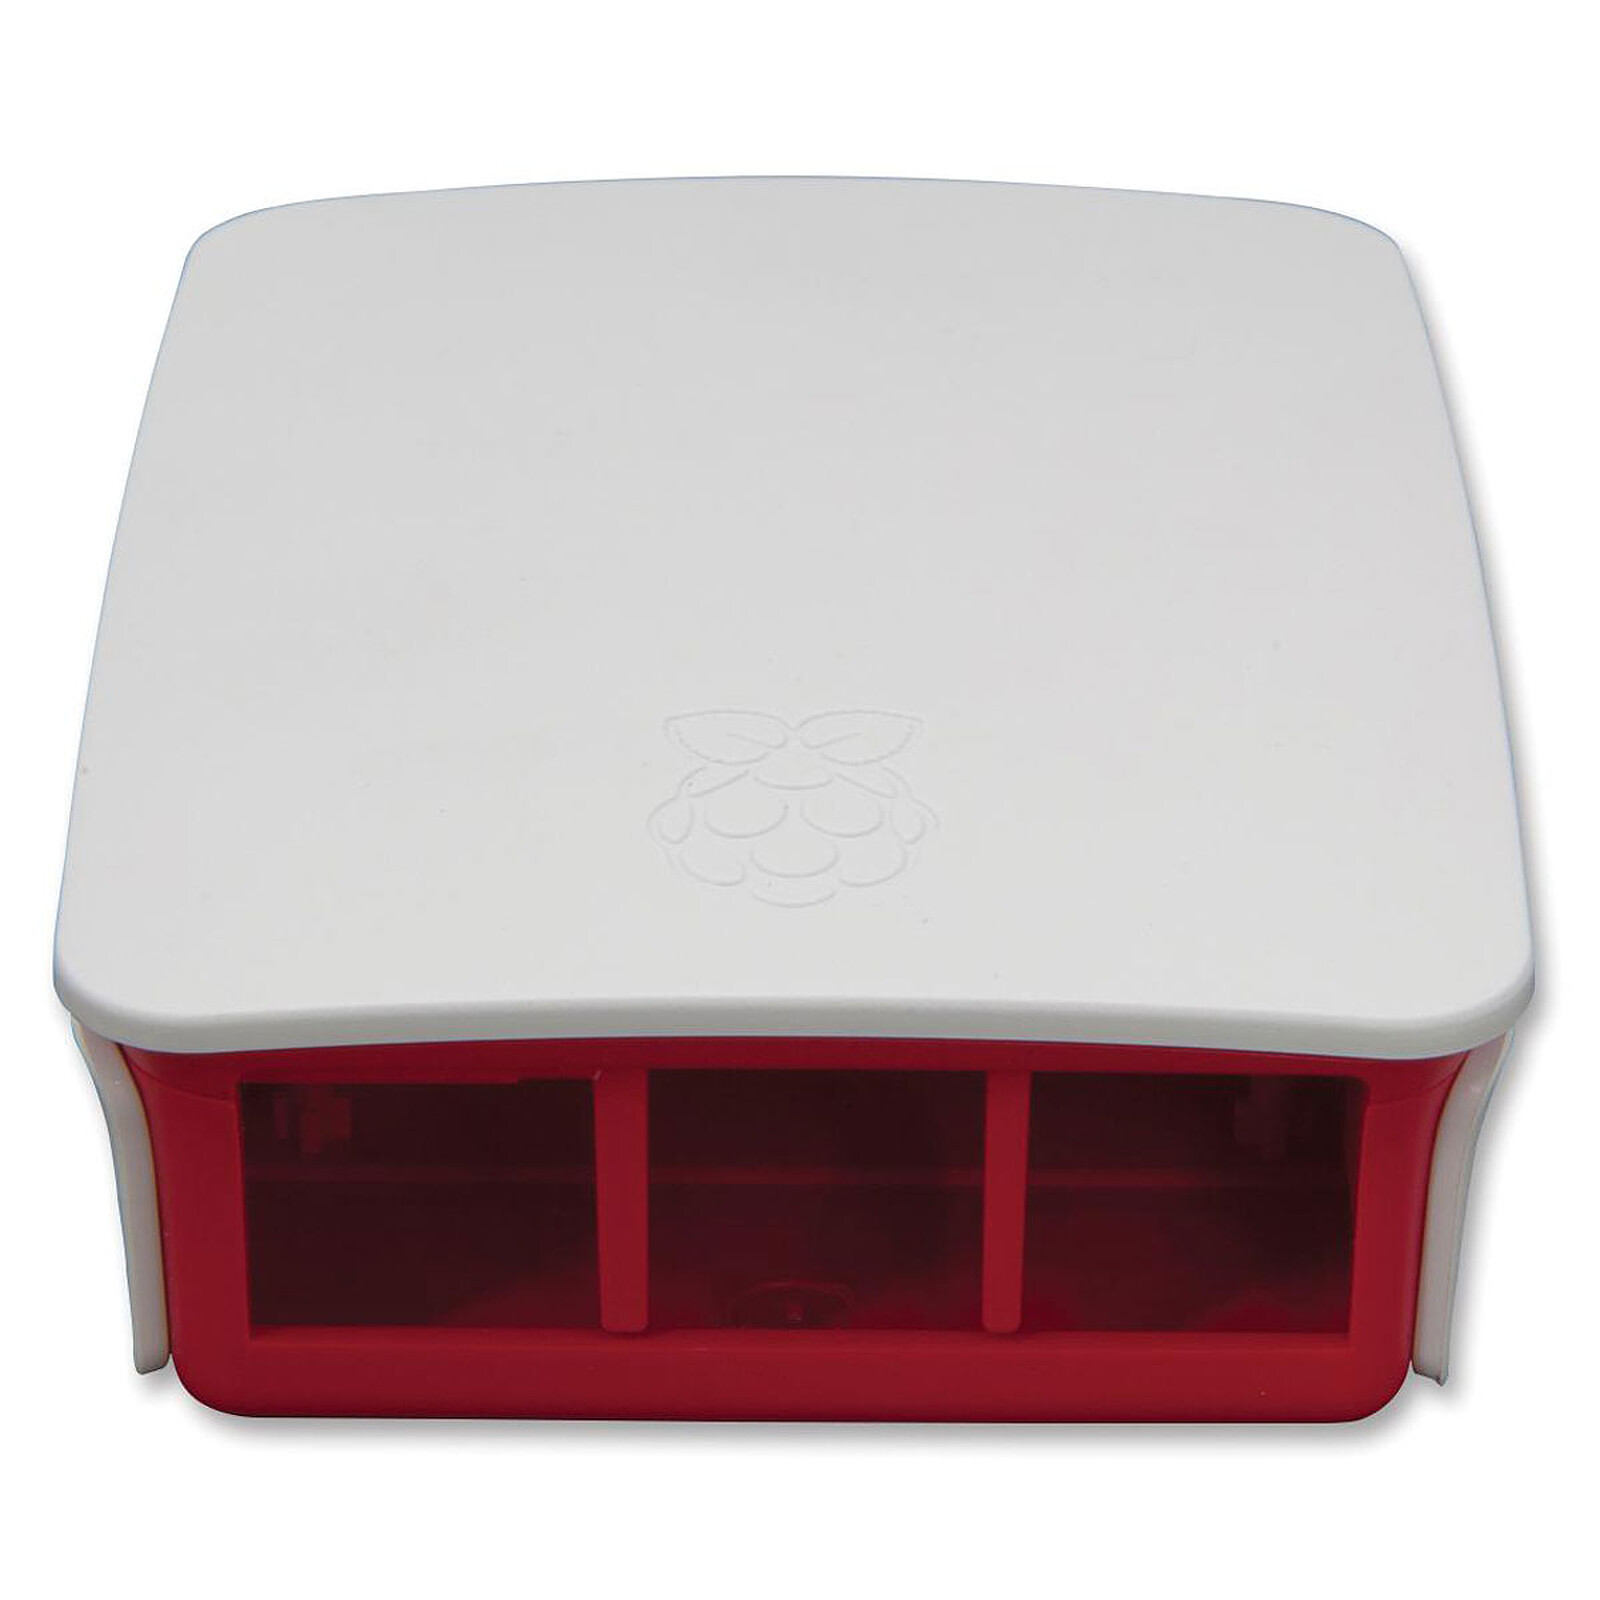 Boitier pour Raspberry Pi 4 Model B avec bouton d'alimentation (Noir) -  Boîtier Raspberry Pi - Garantie 3 ans LDLC